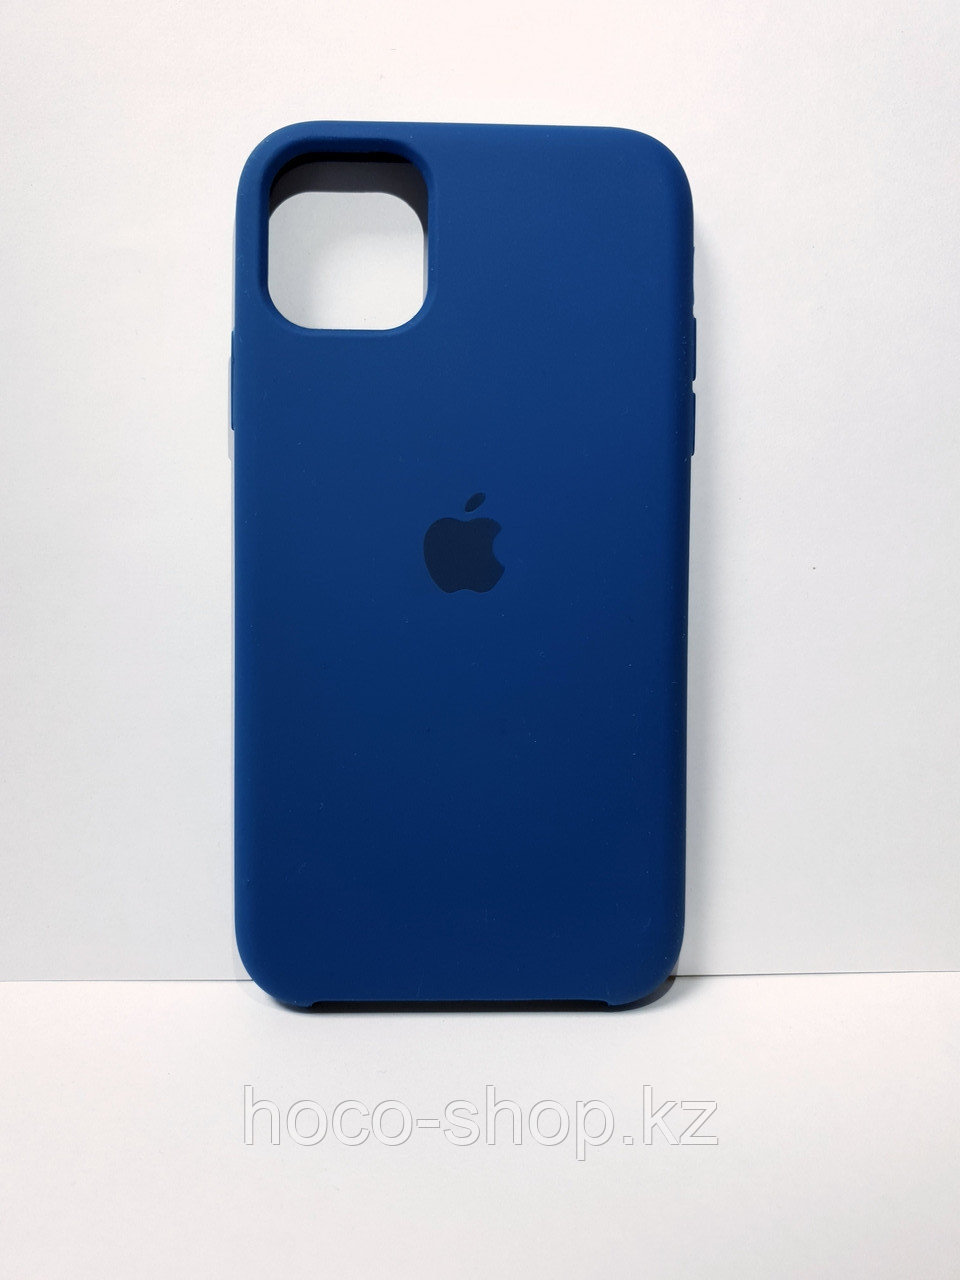 Защитный чехол для iPhone 11 Soft Touch силиконовый, синий